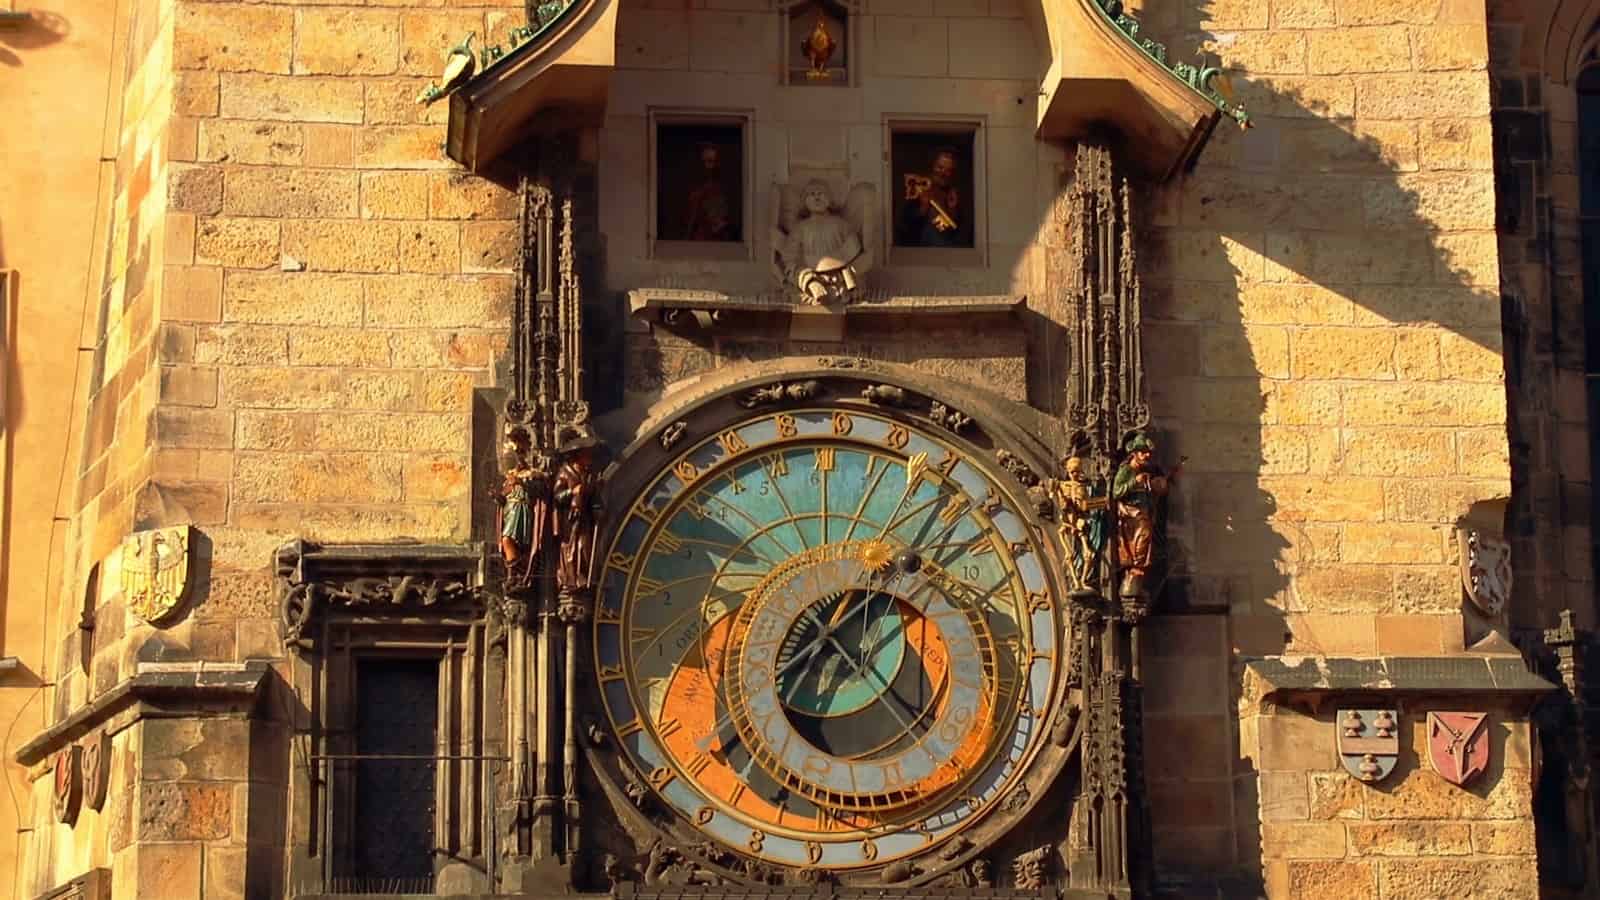 Astronomical clock Prague